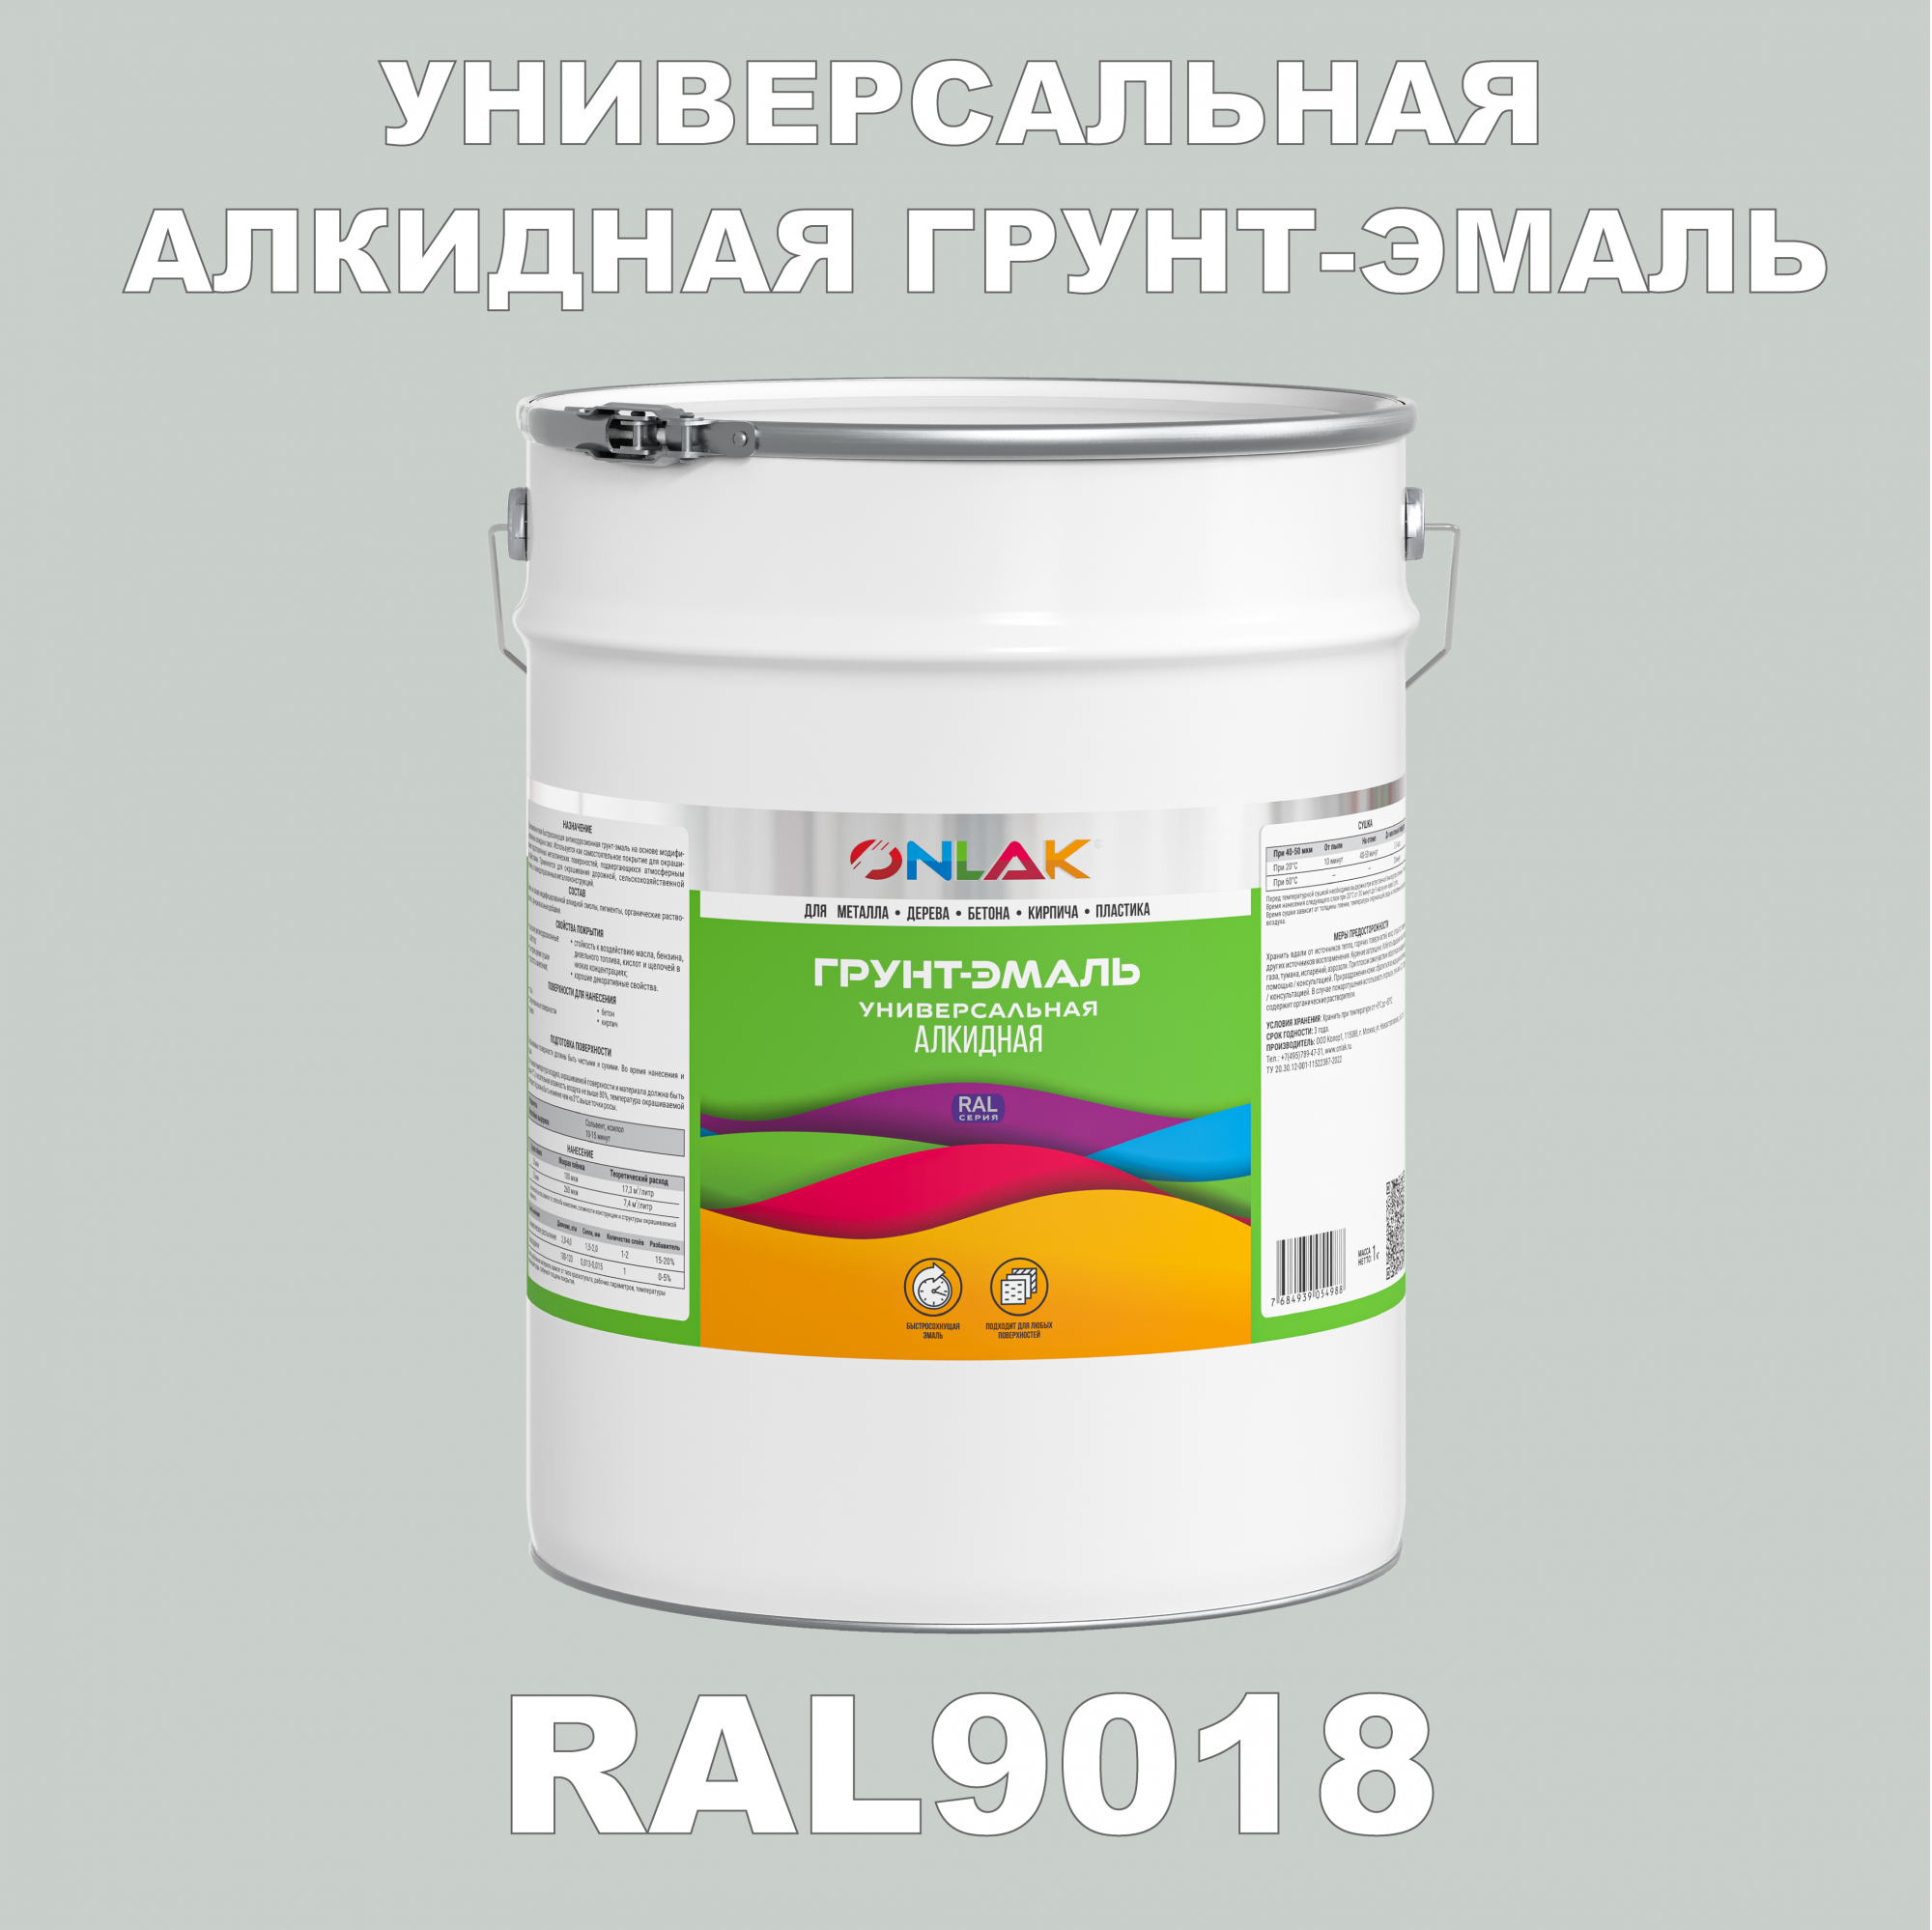 Грунт-эмаль ONLAK 1К RAL9018 антикоррозионная алкидная по металлу по ржавчине 20 кг грунт эмаль престиж по ржавчине алкидная зеленая 1 9 кг